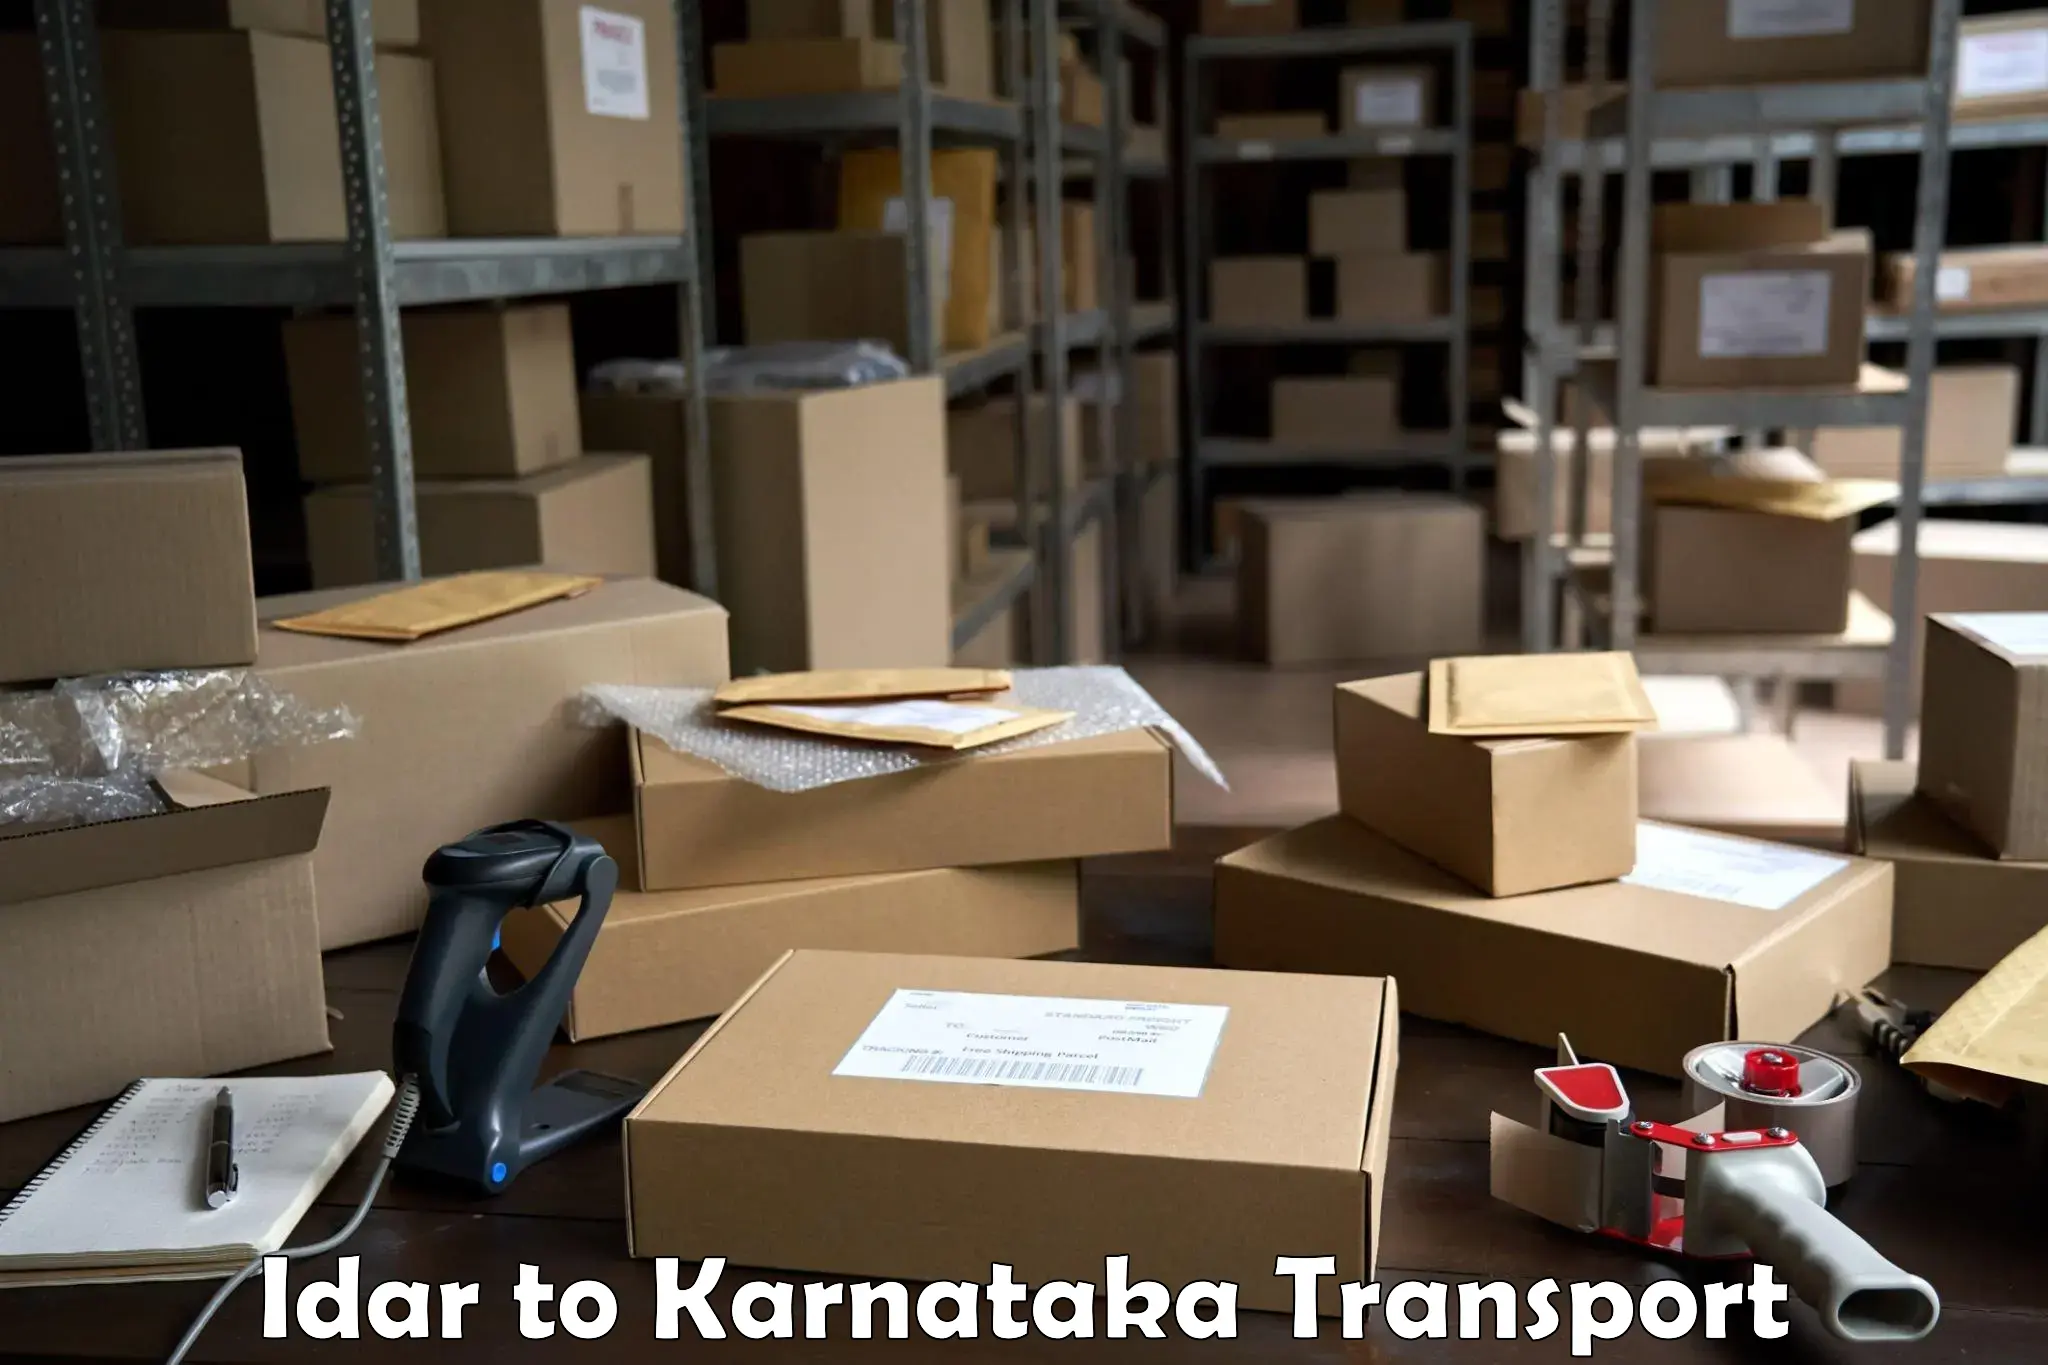 Nationwide transport services Idar to Karnataka